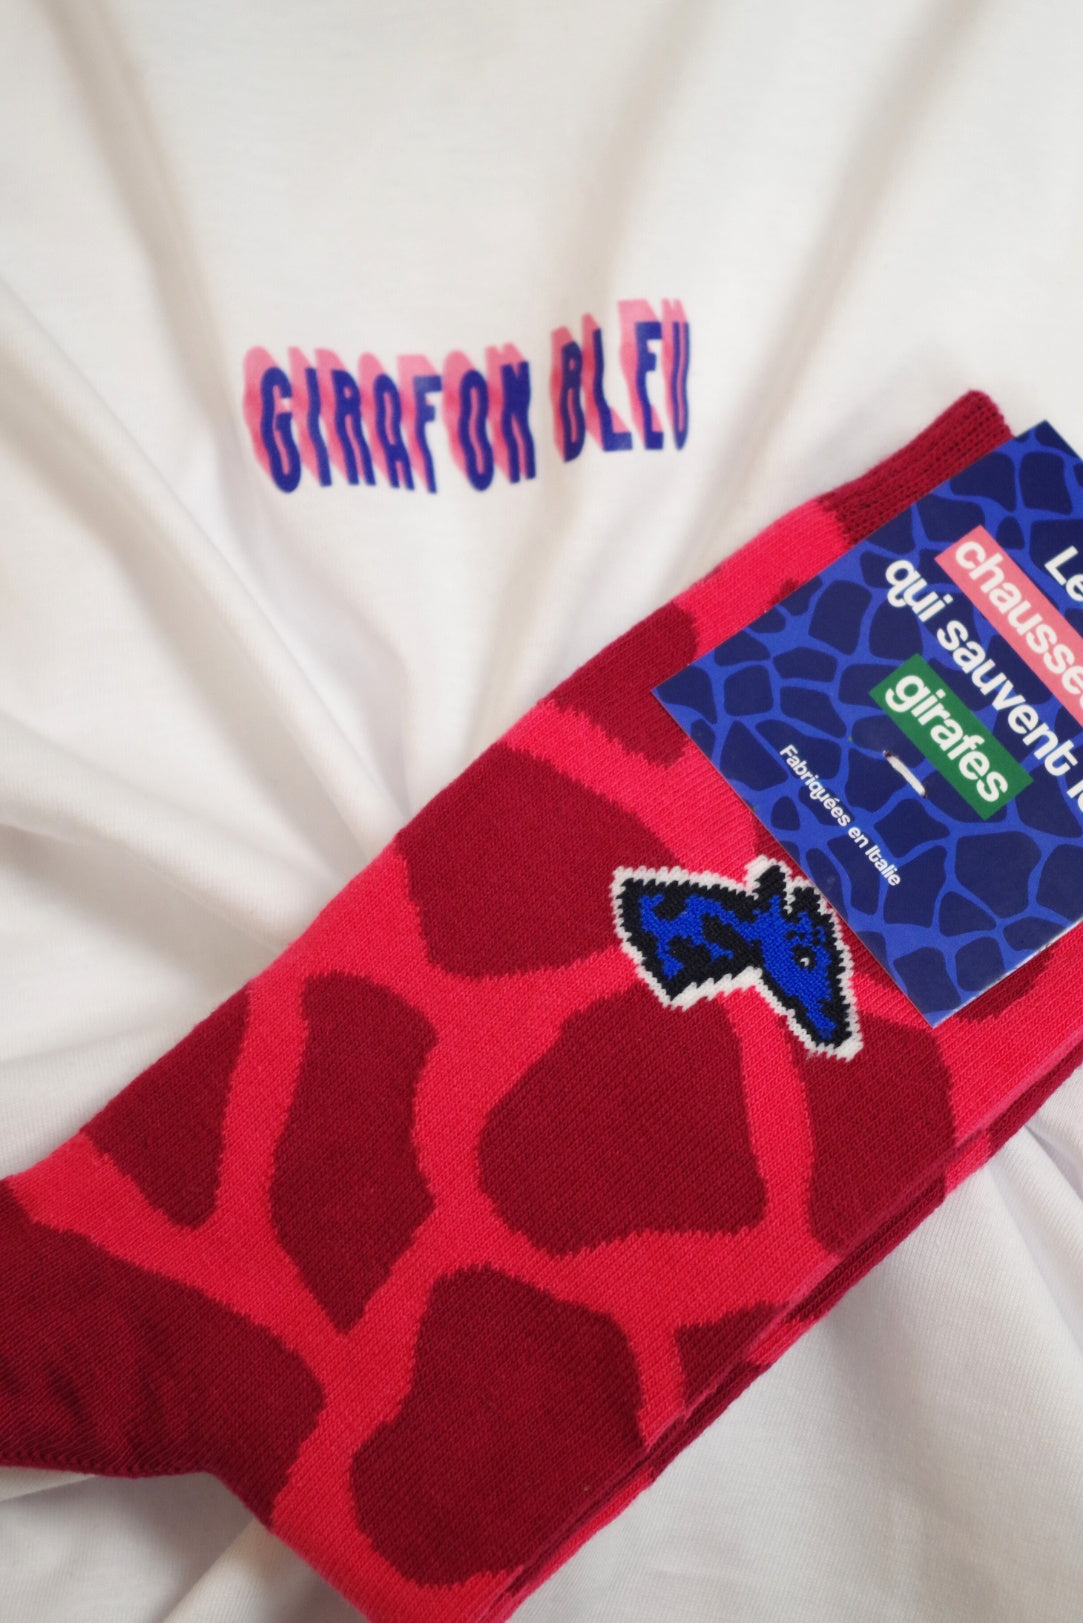 Chaussettes coton biologique - Girafe